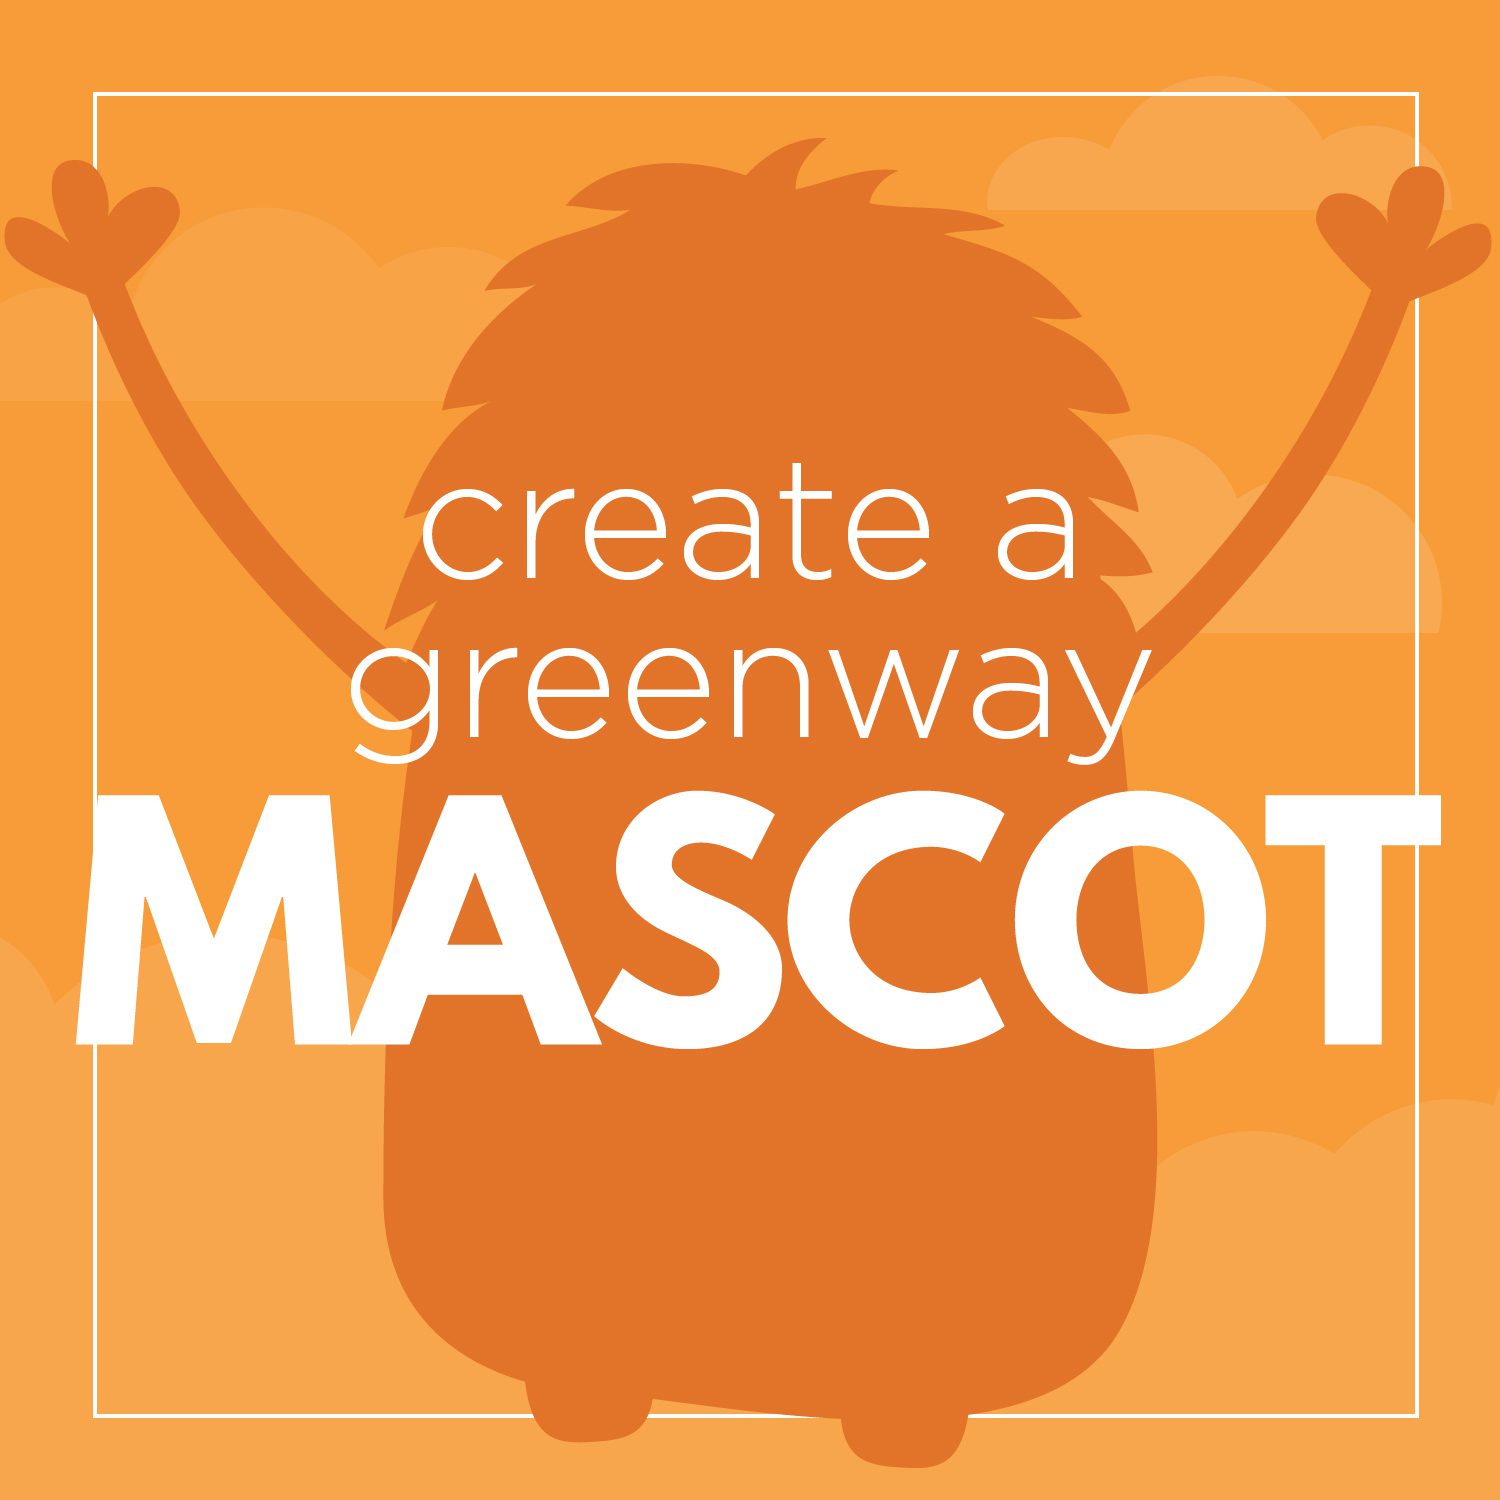 Create a greenway mascot